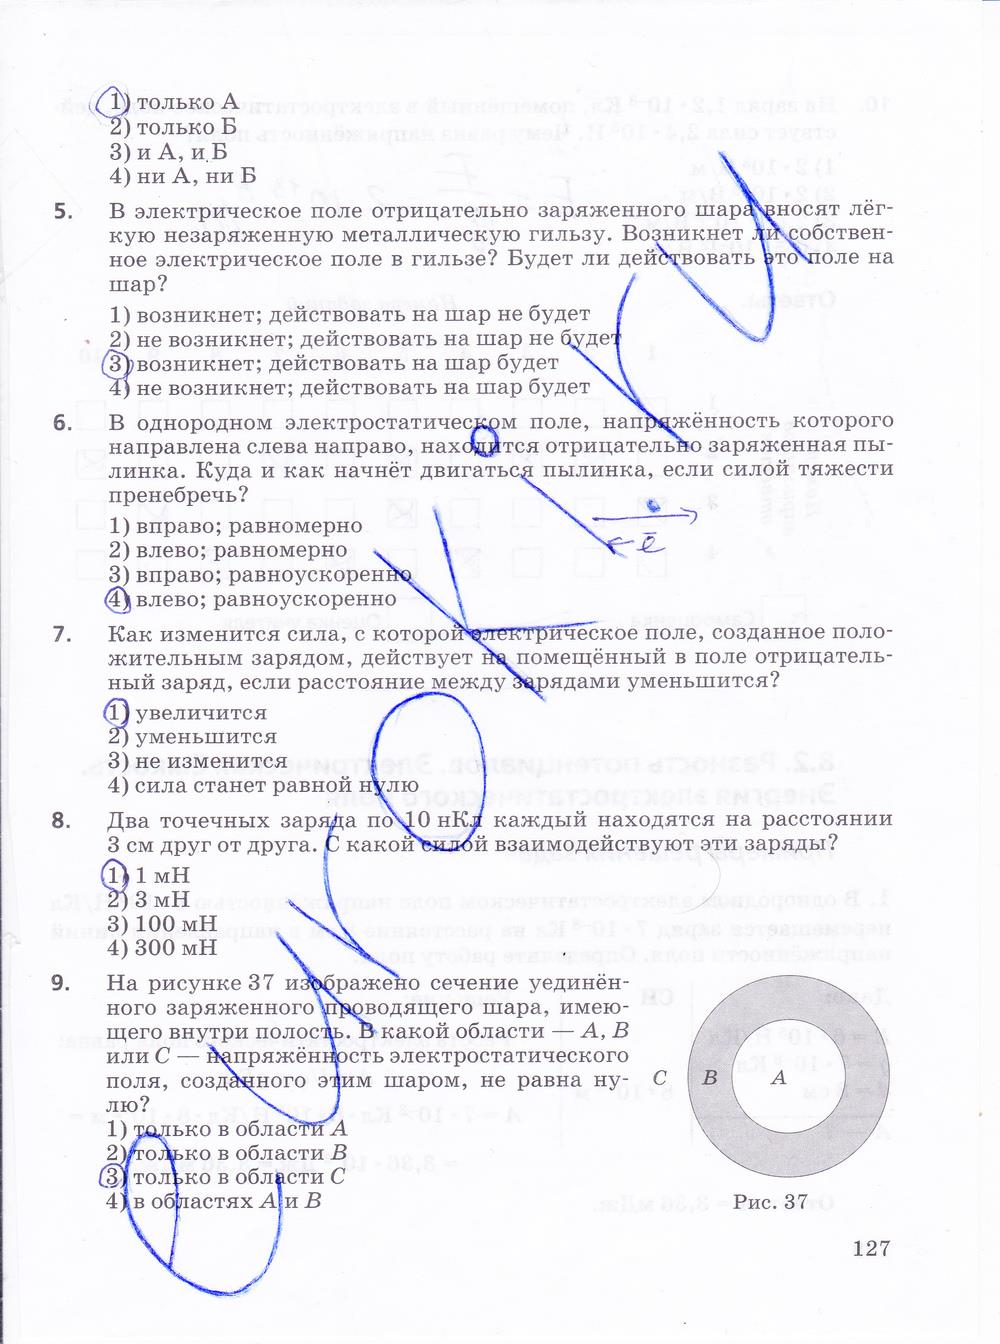 гдз 10 класс рабочая тетрадь страница 127 физика Пурышева, Важеевская